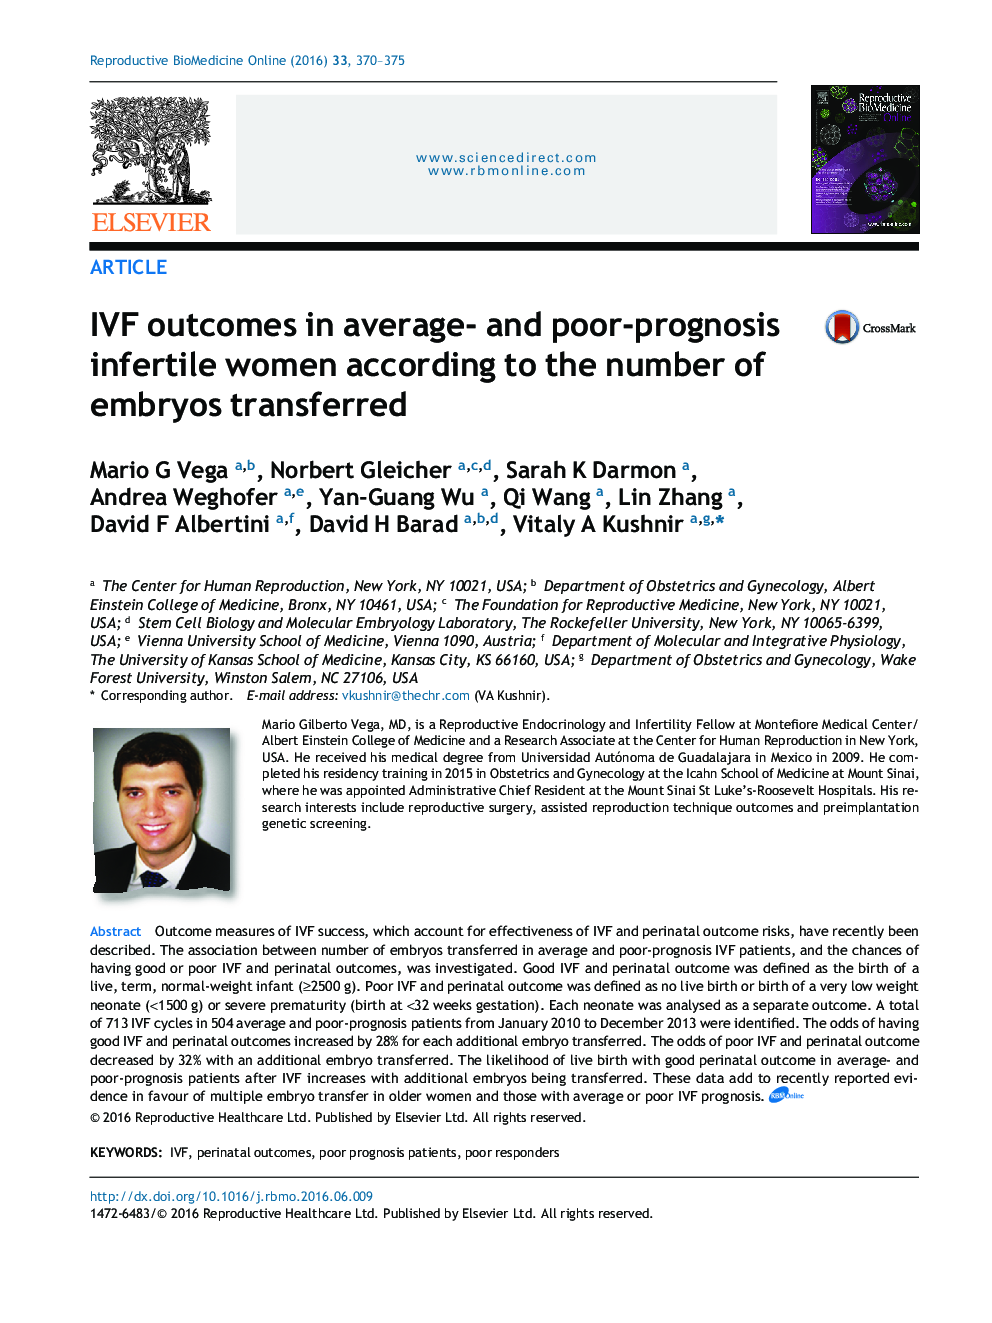 نتایج(لقاح خارج رحمی) IVF در پیش آگهی‌های متوسط و ضعیف  در زنان نابارور با توجه به تعداد جنین های انتقالی